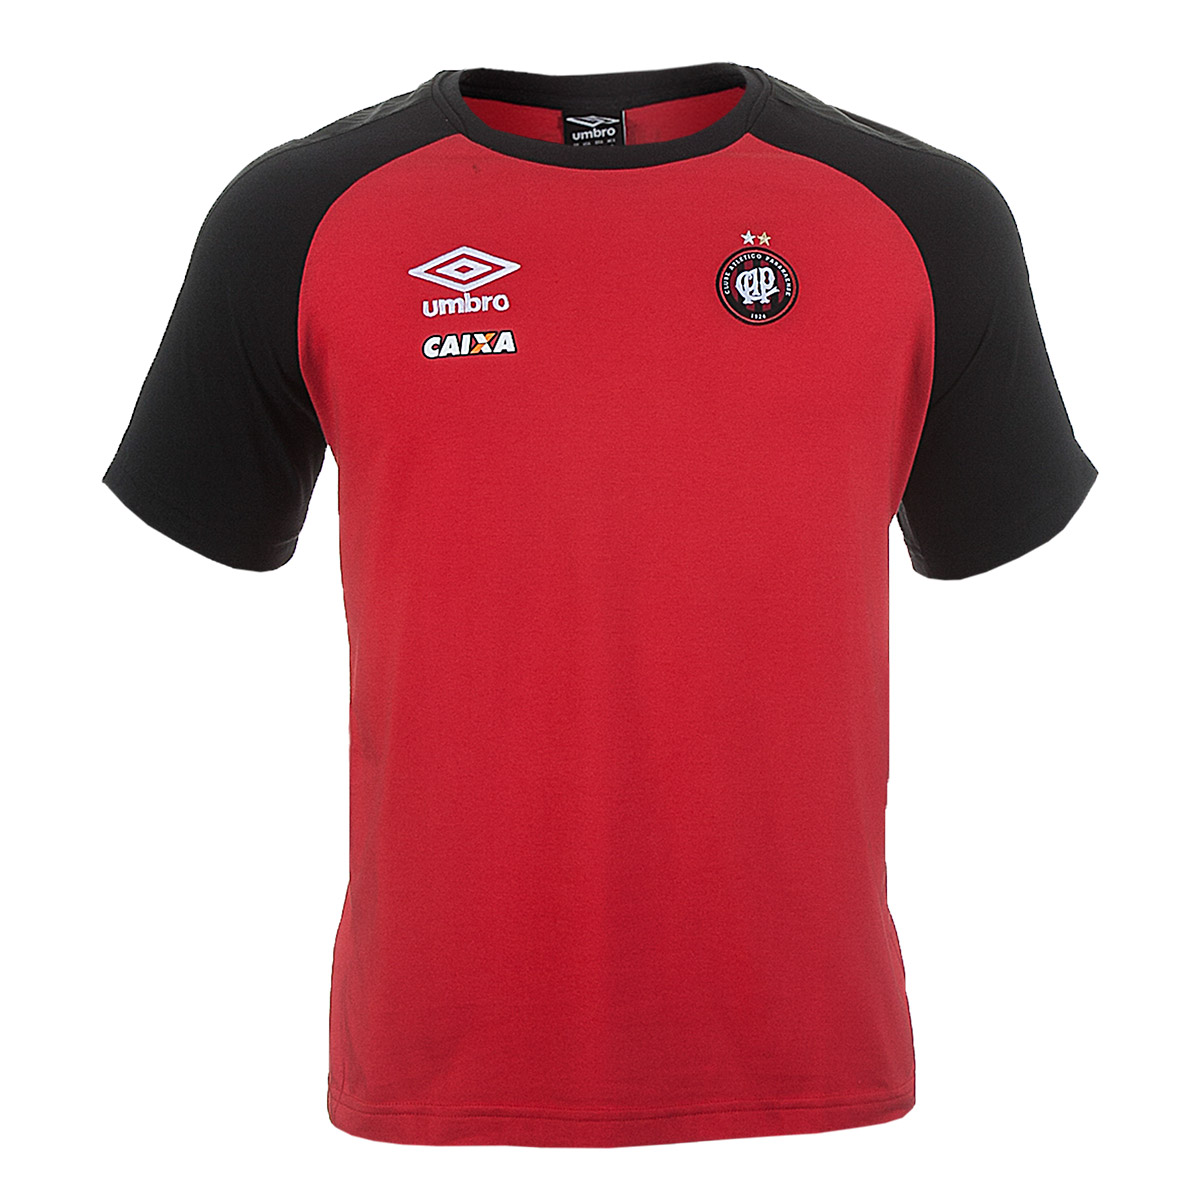 Camiseta Masc. Umbro Concentração Atletico Paranaense - Vermelho/Preto